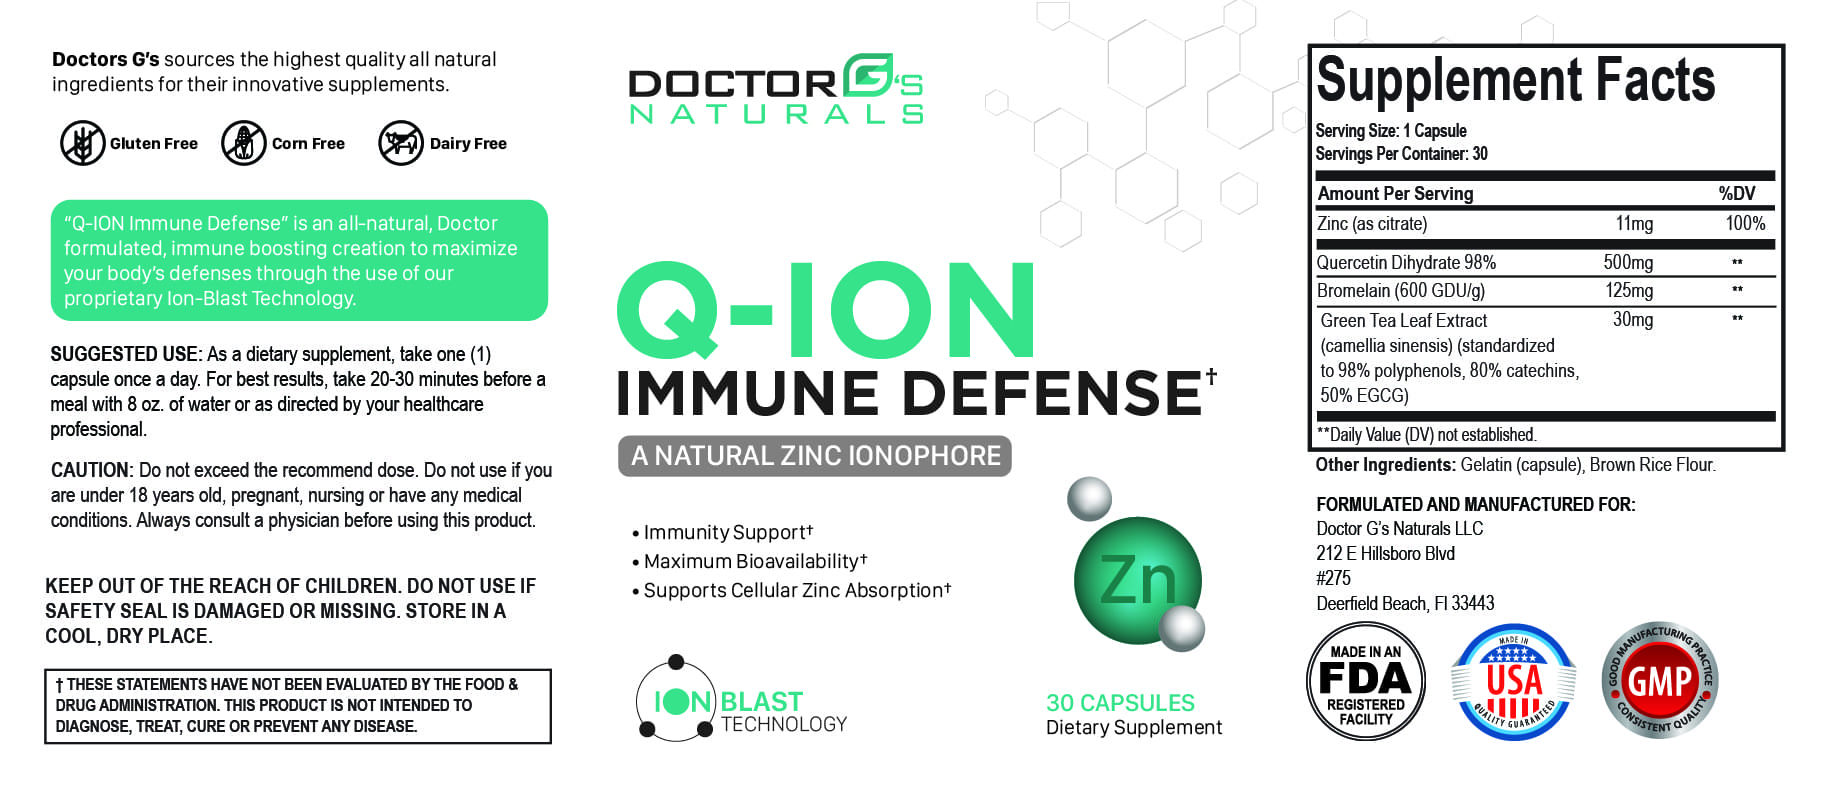 Q-ION Immune Defense Ingredients Label